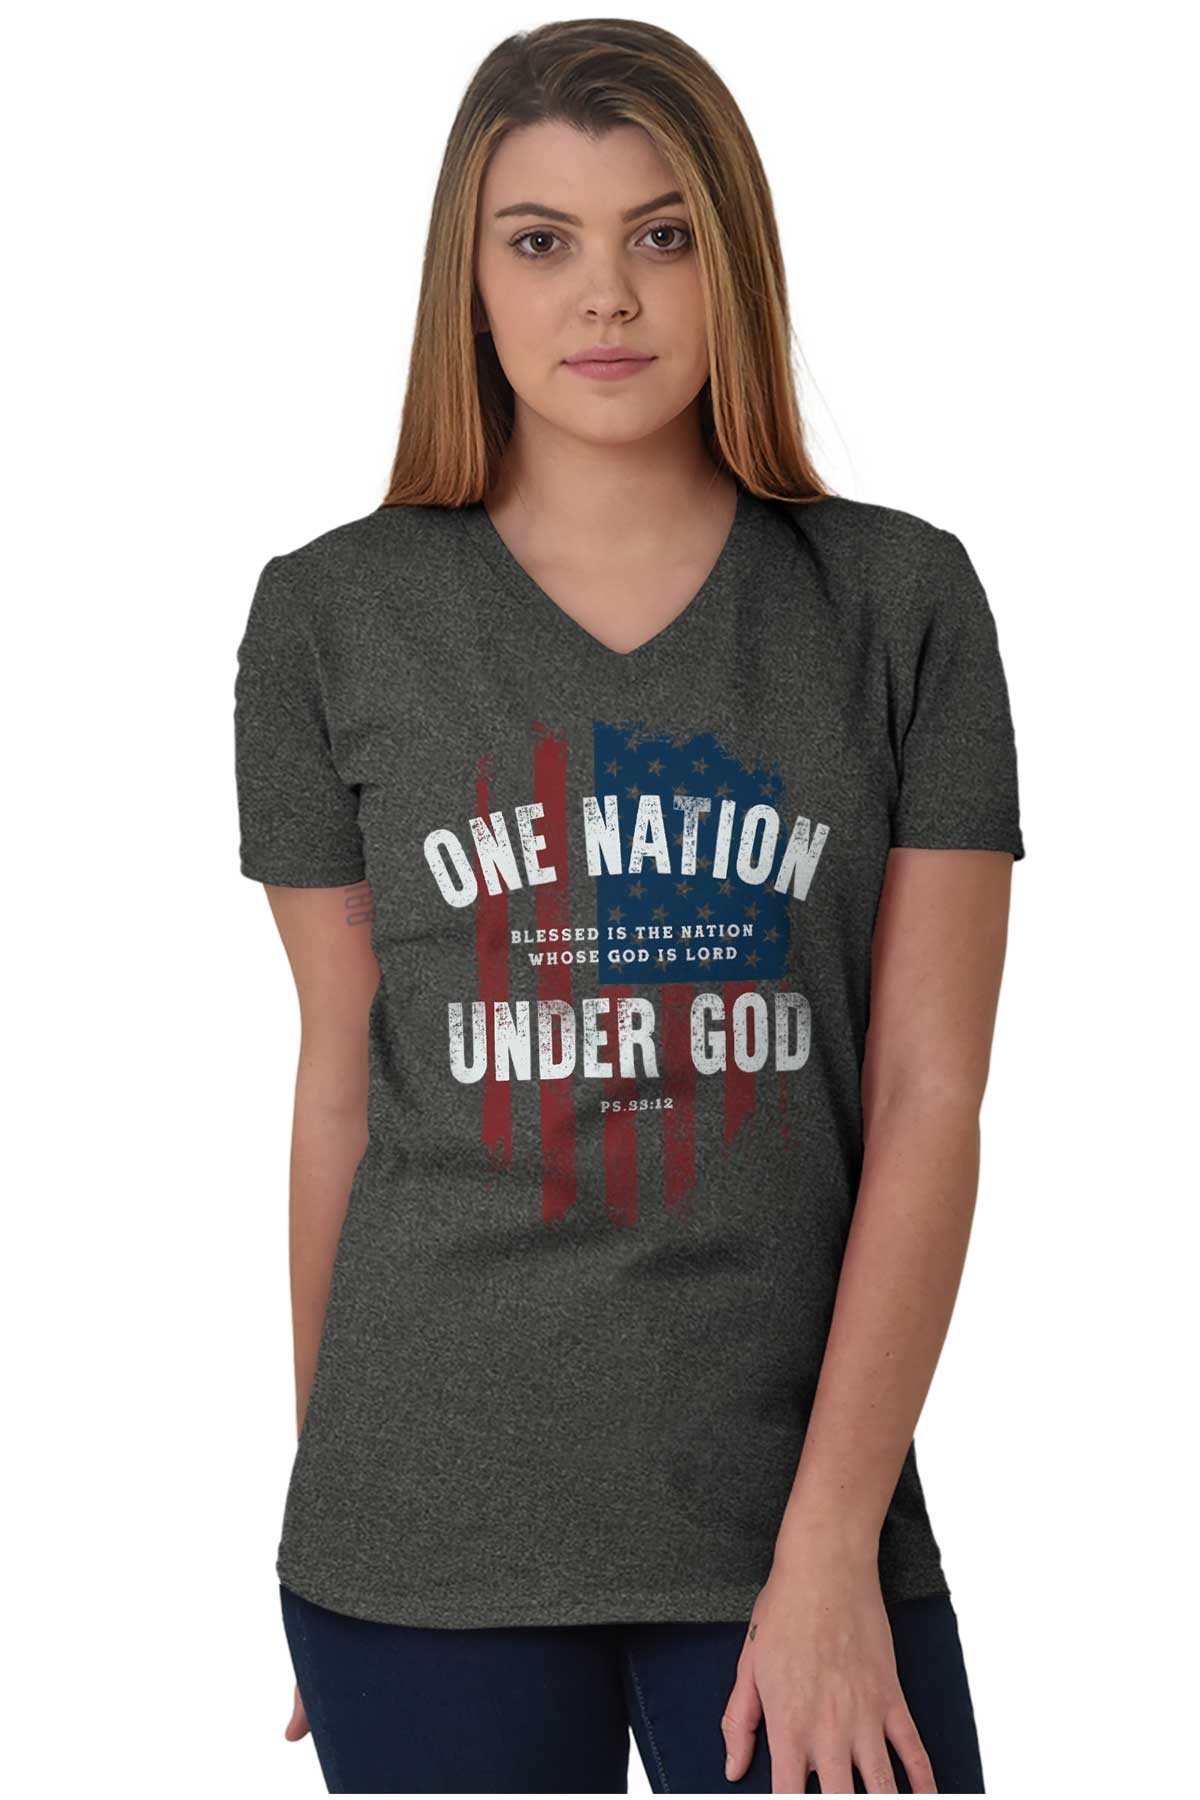 gammelklog Spole tilbage Halvkreds One Nation Under God V-Neck Tee |Christian Strong